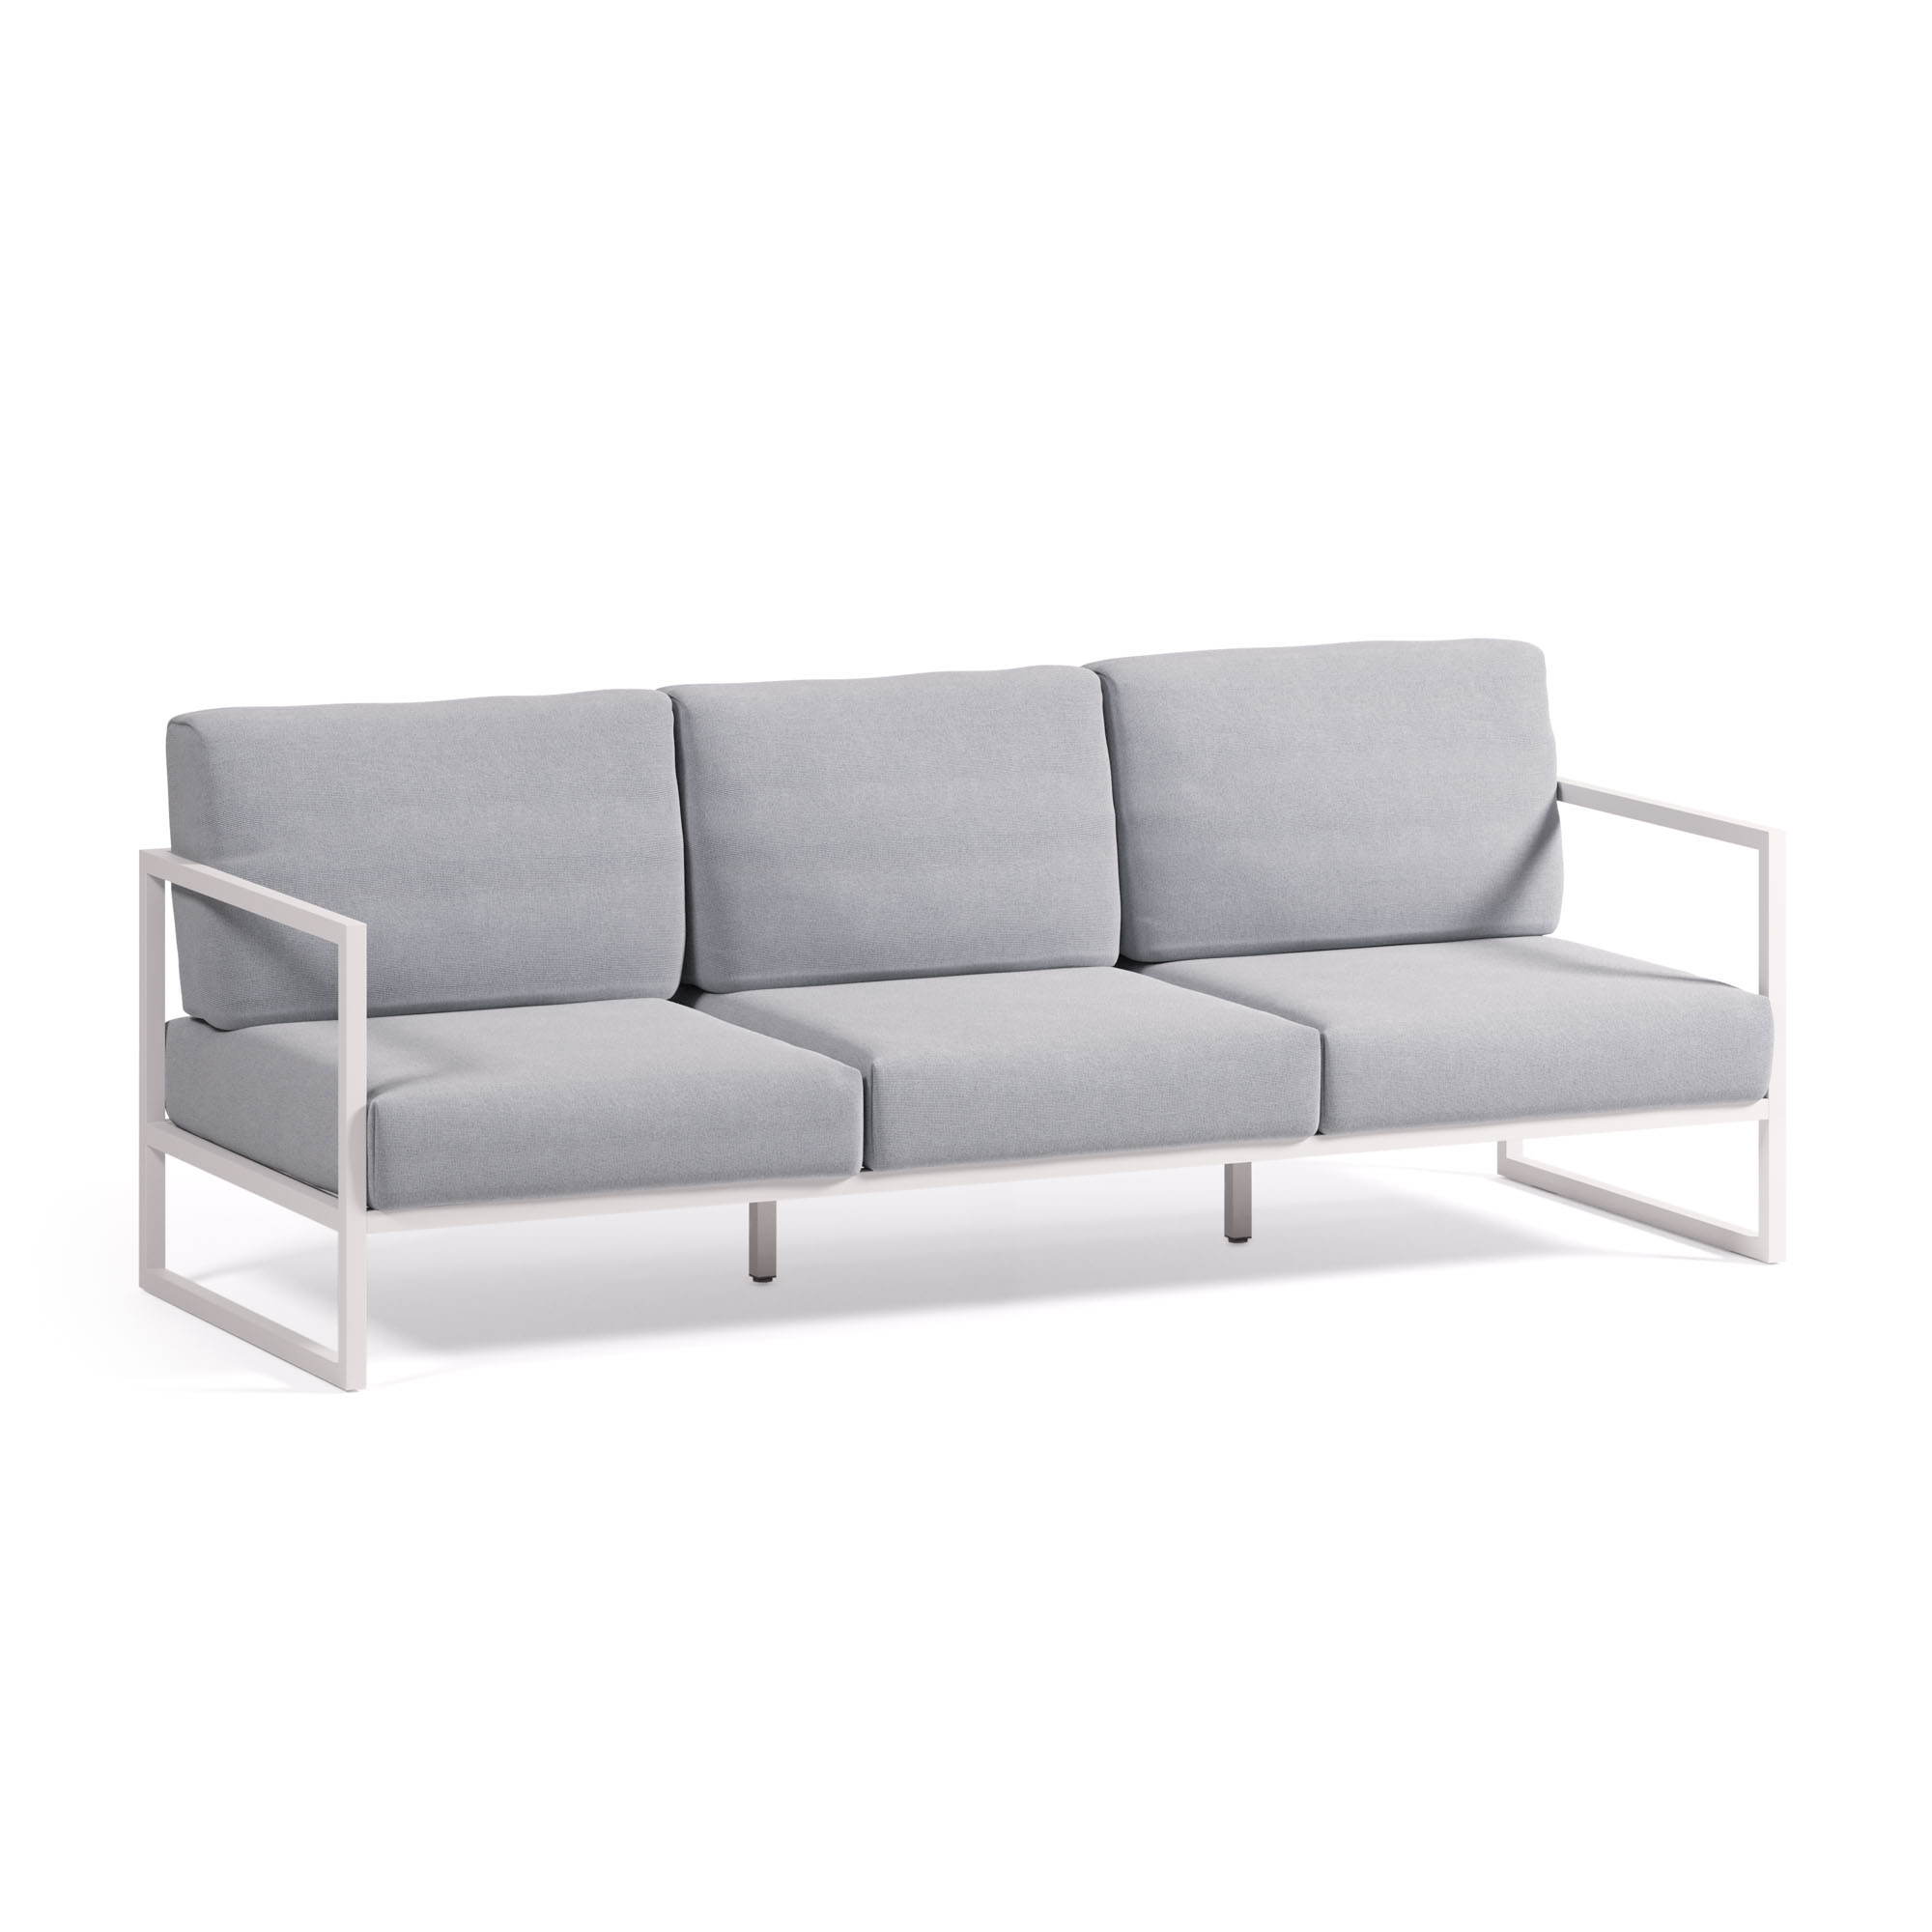 Comova Уличный 3-х местный диван сине-серый с белым алюминиевым каркасом 222 см